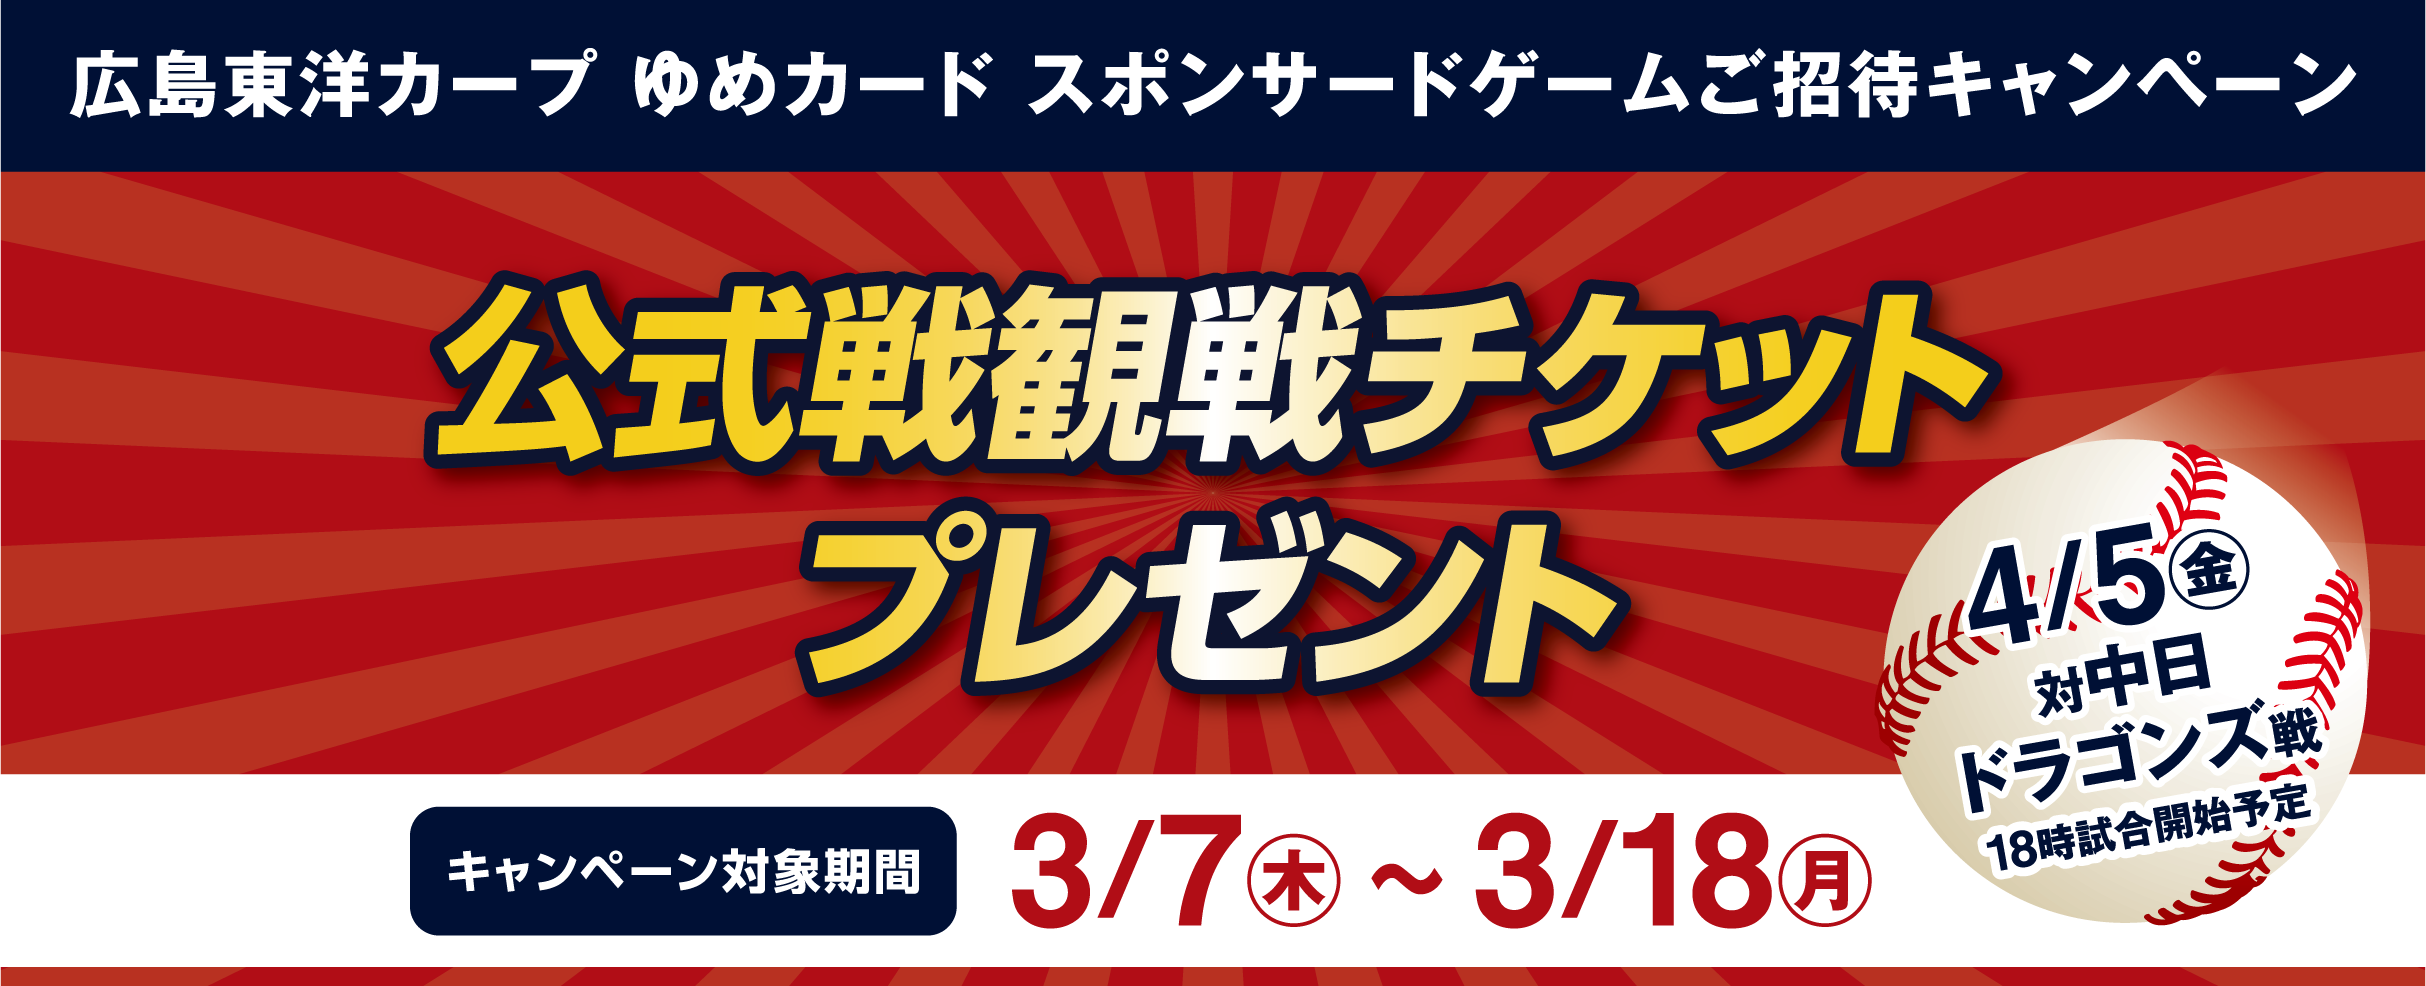 【新販売店】7月10日 中日ドラゴンズ対広島カープ戦 チケットペア パノラマA 野球